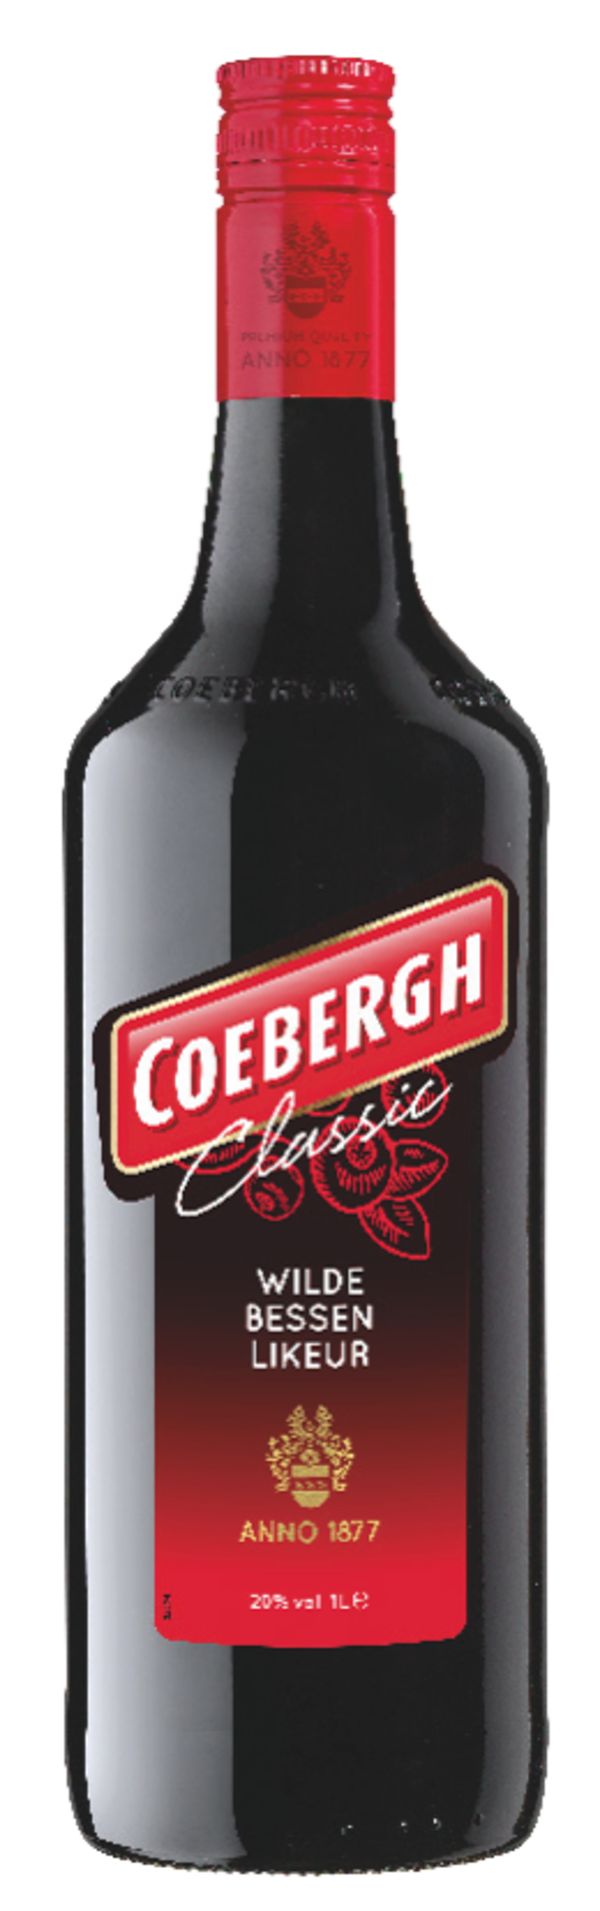 Coebergh Classic